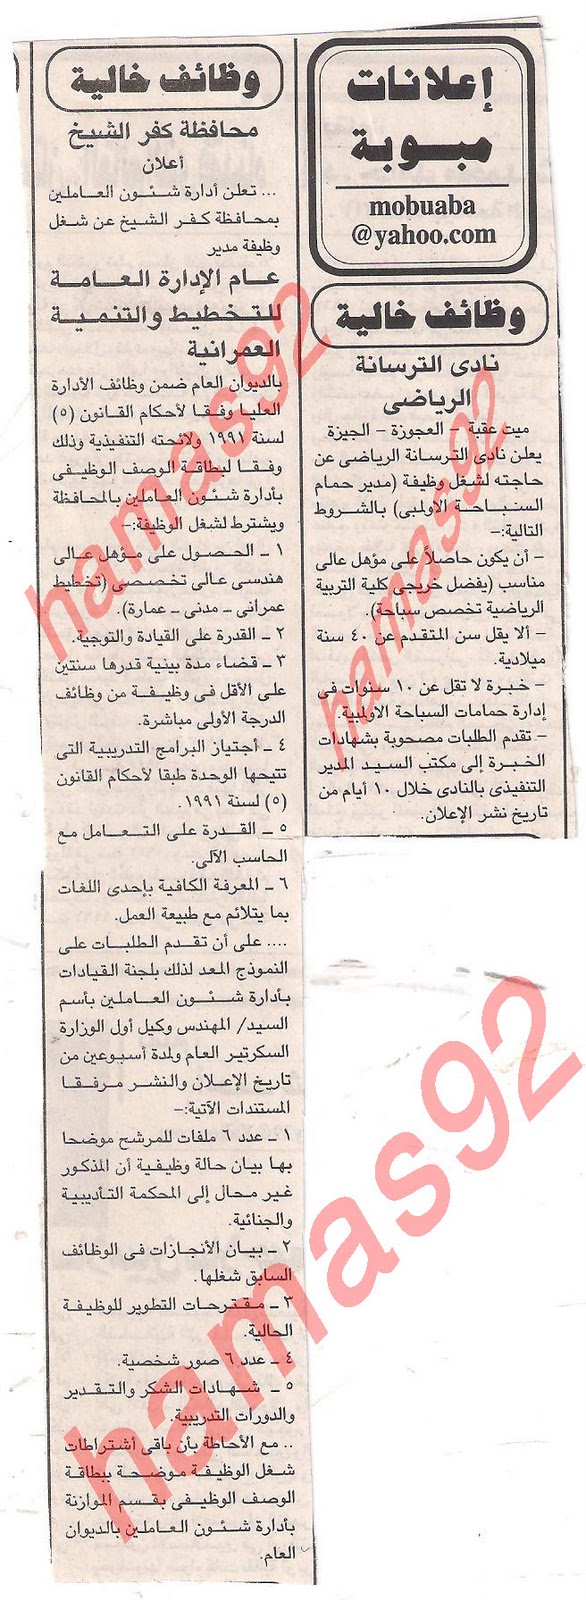 وظائف جريدة الجمهورية الجمعة 9\12\2011  Picture+023